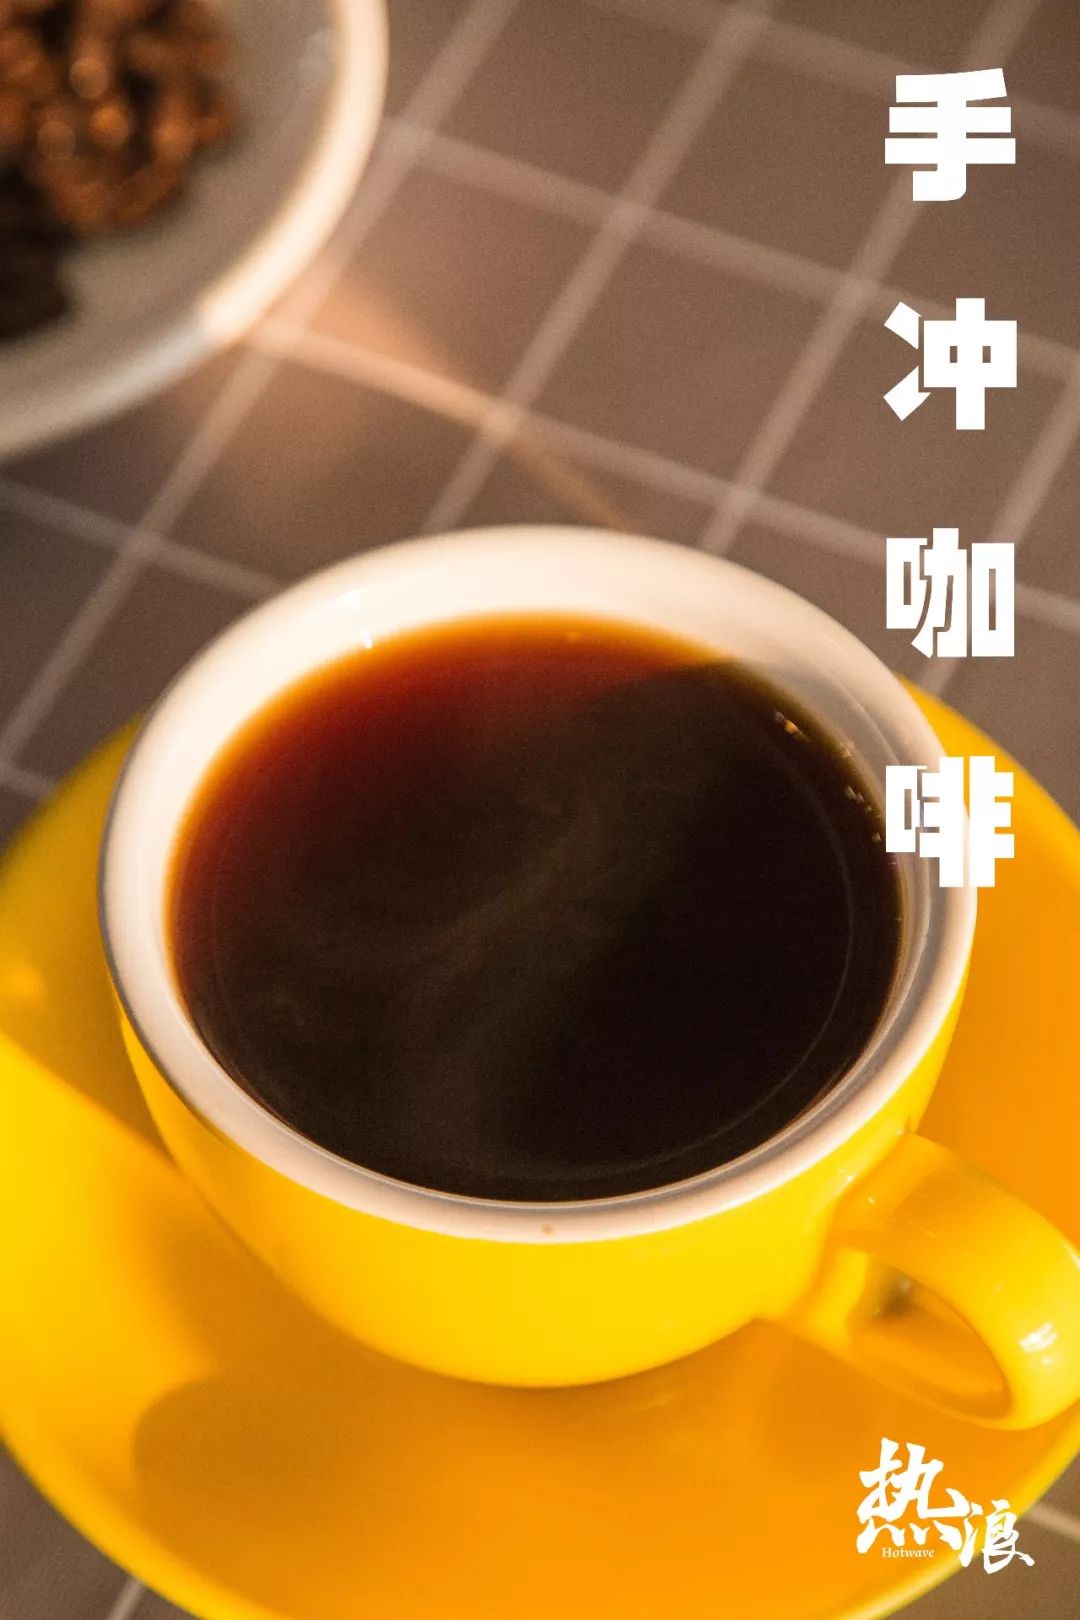 广州磨豆咖啡 | EHS咖啡西点培训学院